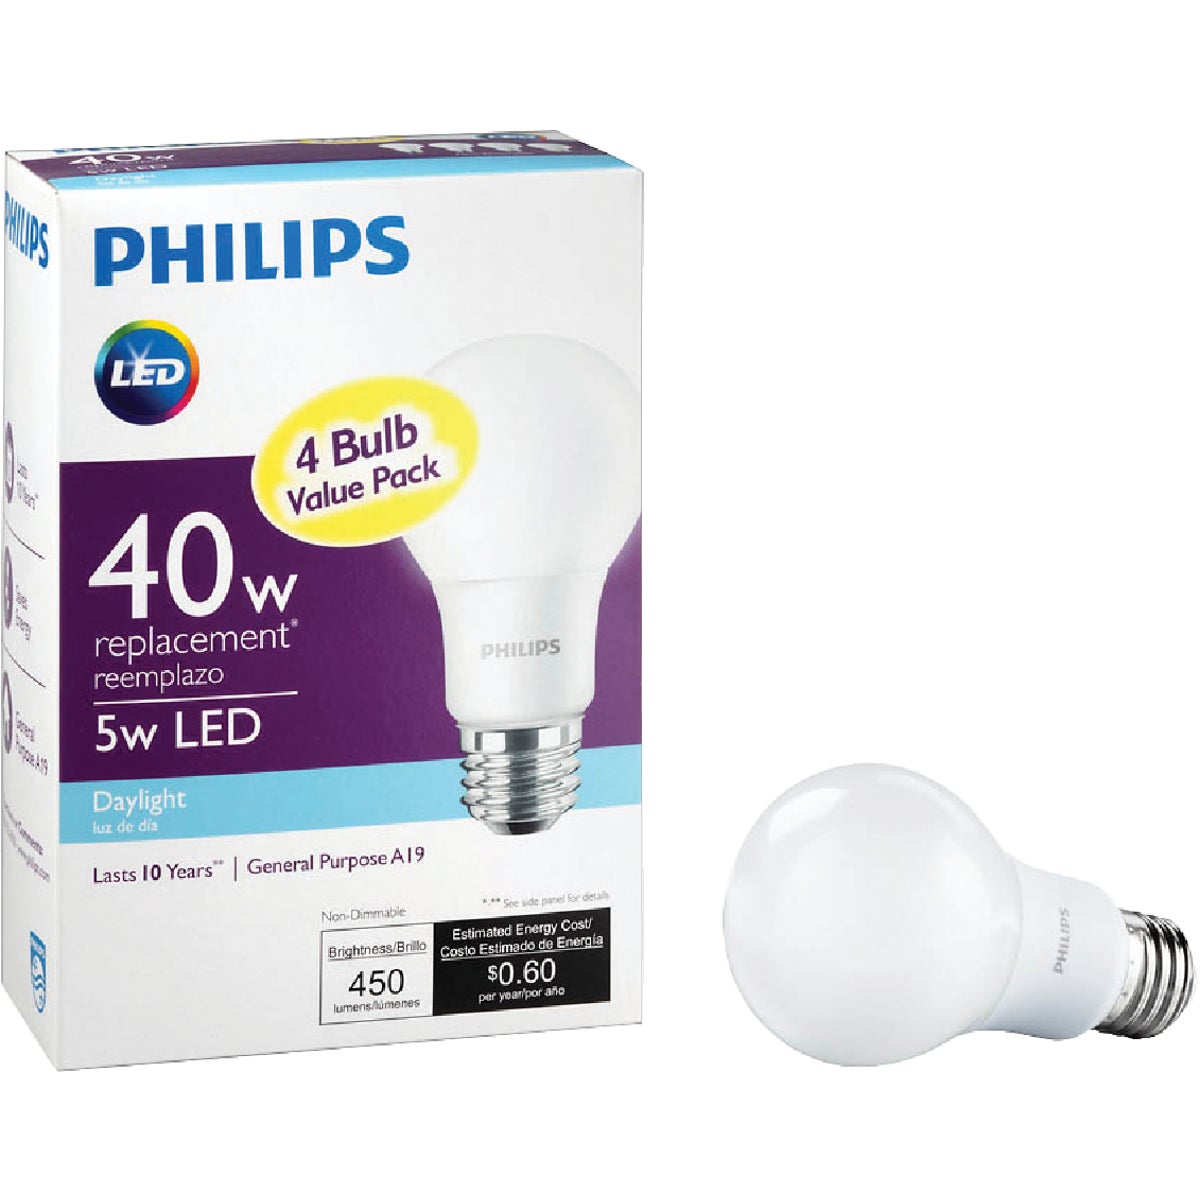 Philips Watt Equivalent Daylight LED Light Bulb, 4-Pack Hartville